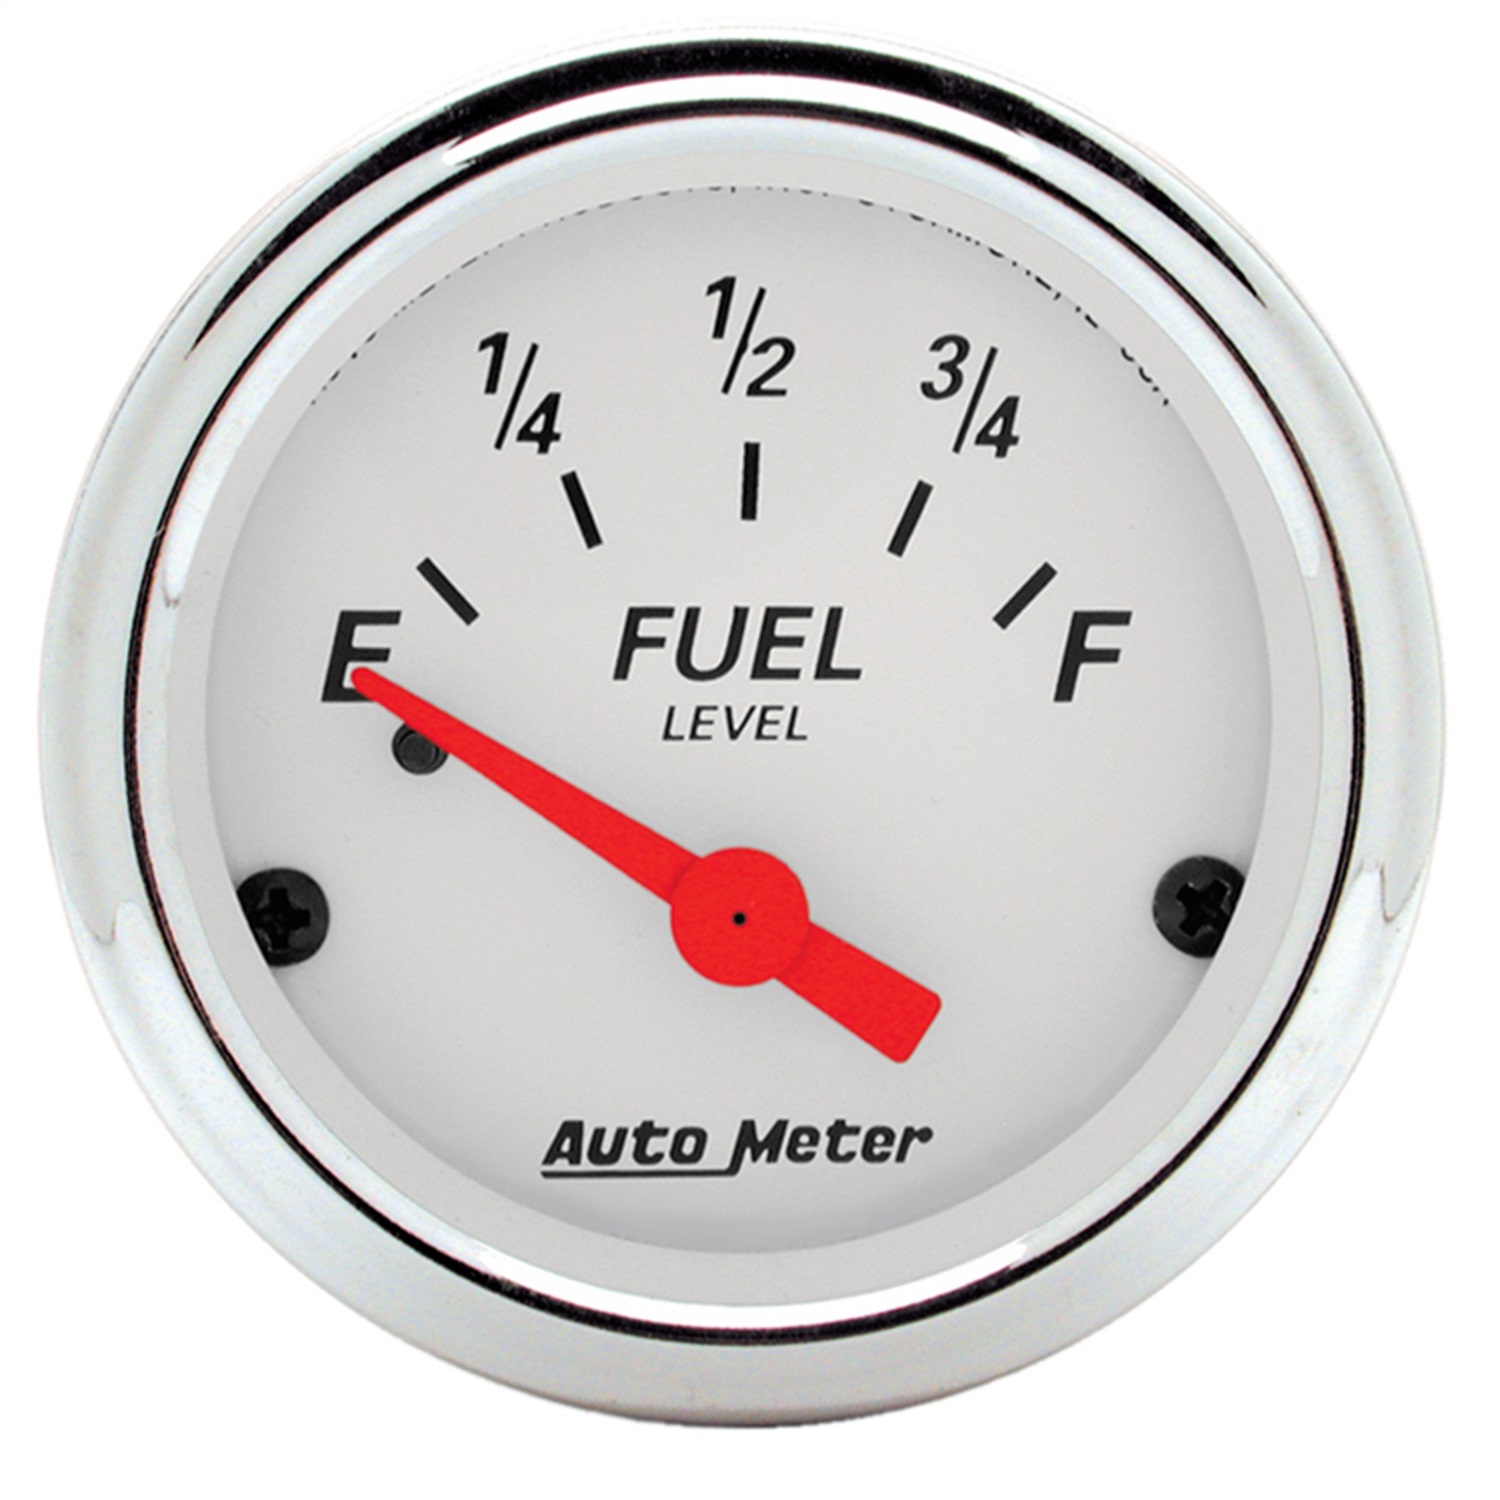 Auto Meter Auto Meter 1315 Arctic White; Fuel Level Gauge